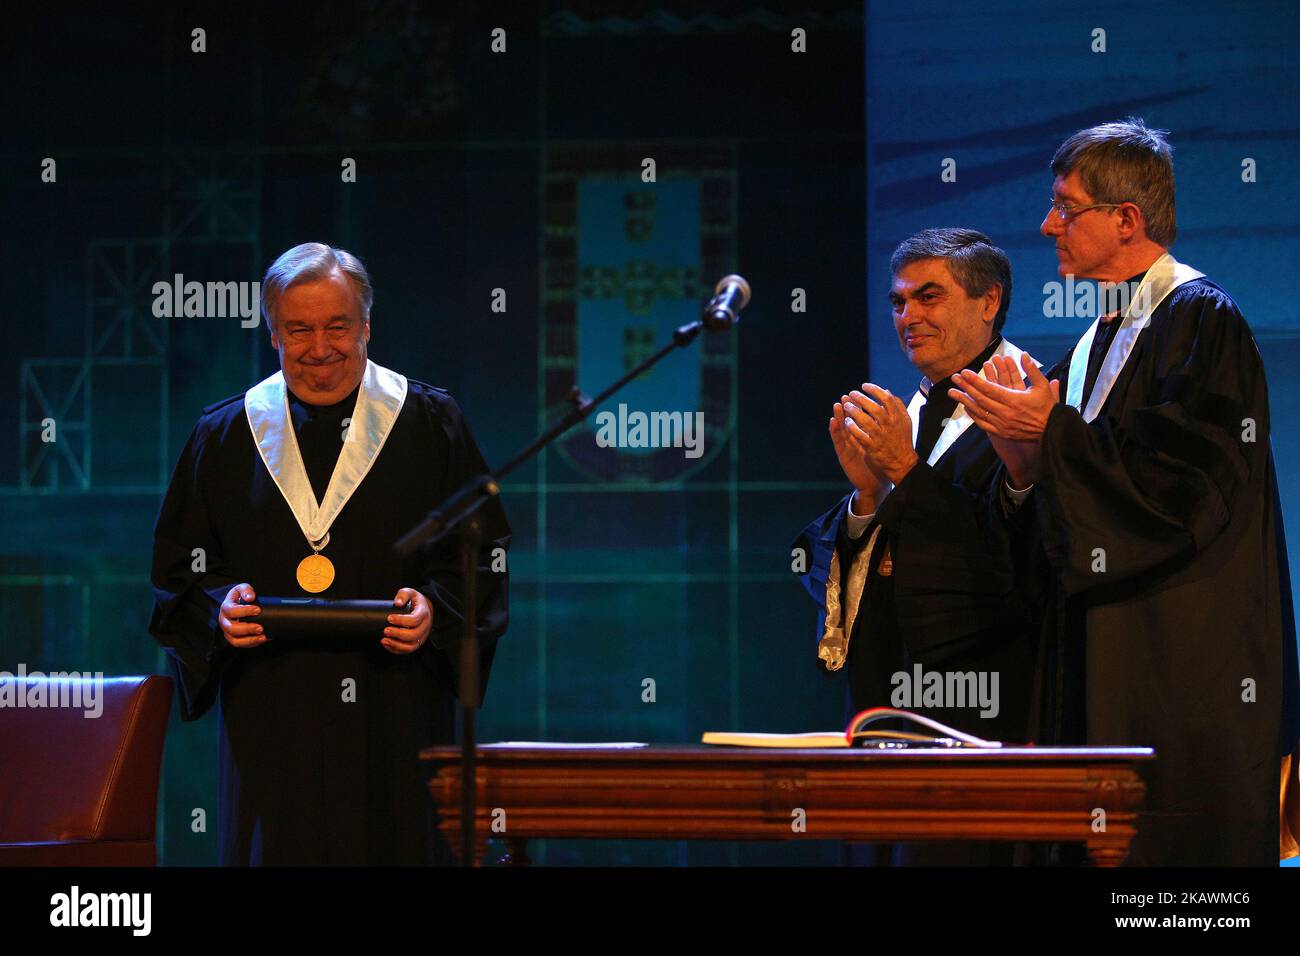 Le Secrétaire général des Nations Unies, Antonio Guterres (L), reçoit un diplôme de docteur Honoris Causa lors d'une cérémonie à l'Université de Lisbonne à Lisbonne (Portugal) sur 19 février 2018. ( Photo par Pedro Fiúza/NurPhoto) Banque D'Images